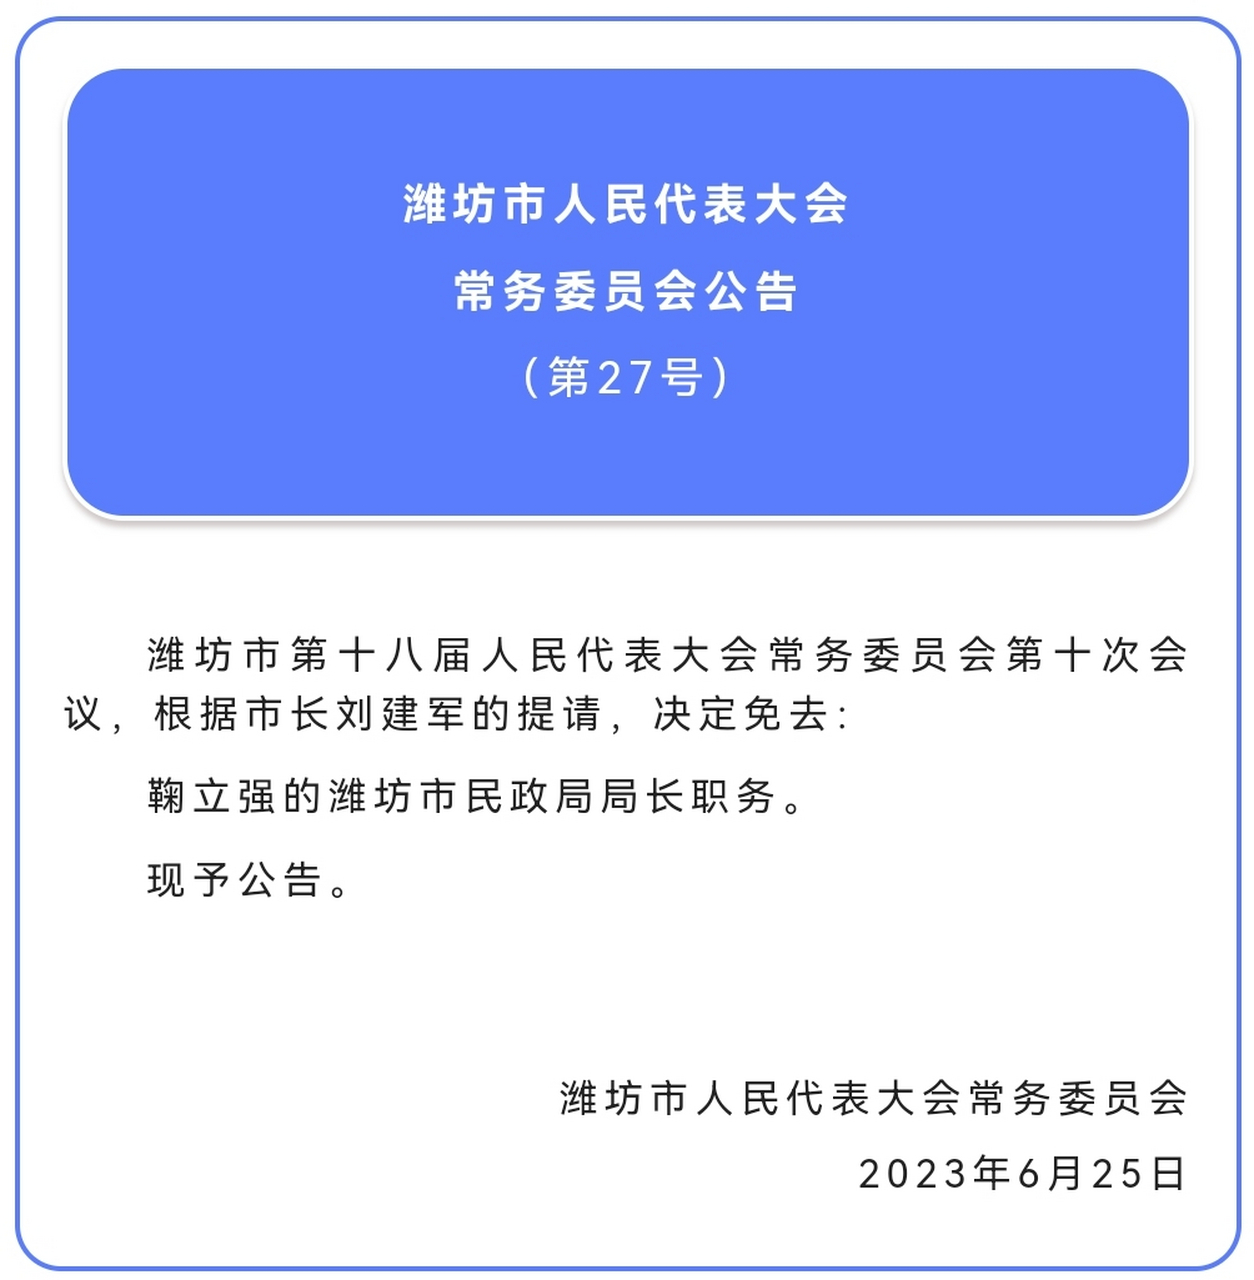 鞠立强被任命为潍坊市民政局局长